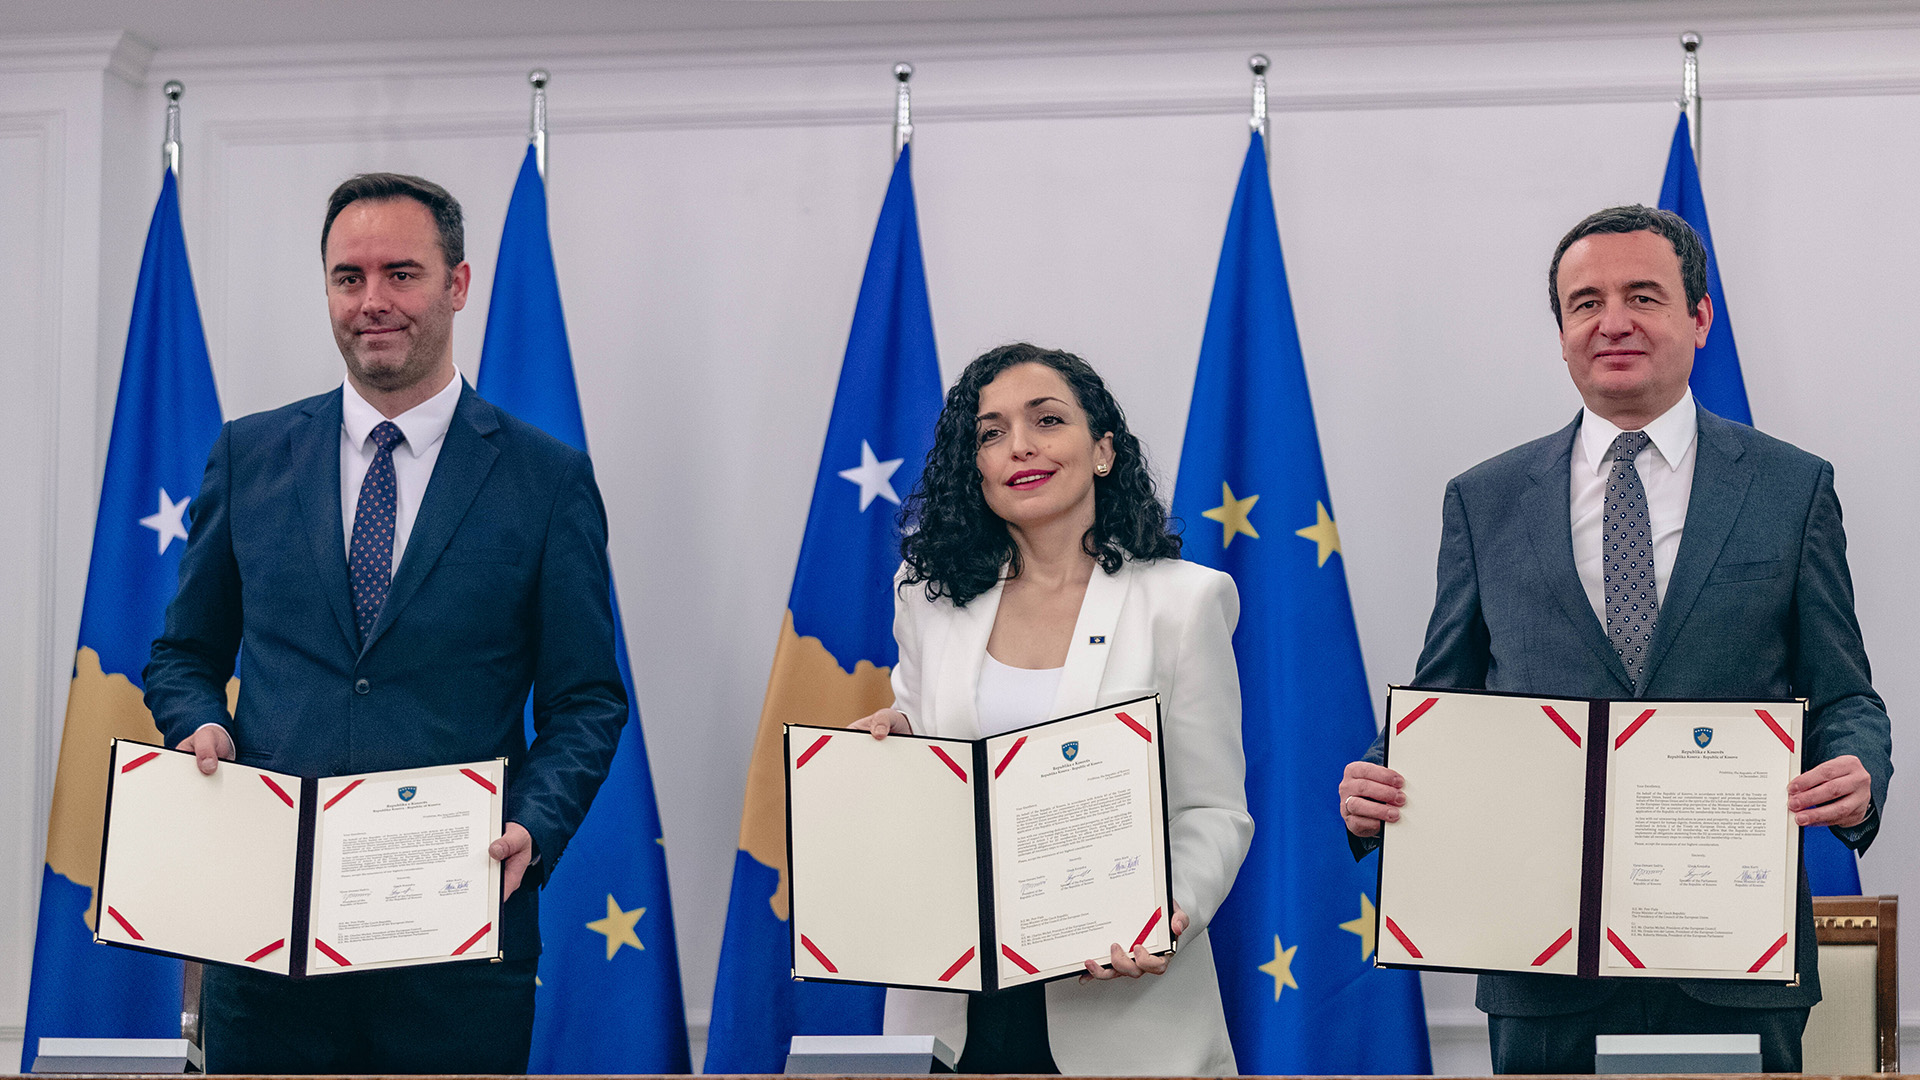 Präsidentin Vjosa Osmani, Parlamentspräsident Glauk Konjufca und Premierminister Albin Kurti bei der feierlichen Unterzeichnung des Antrags auf Beitritt zur Europäischen Union. | IMAGO/VXimages.com